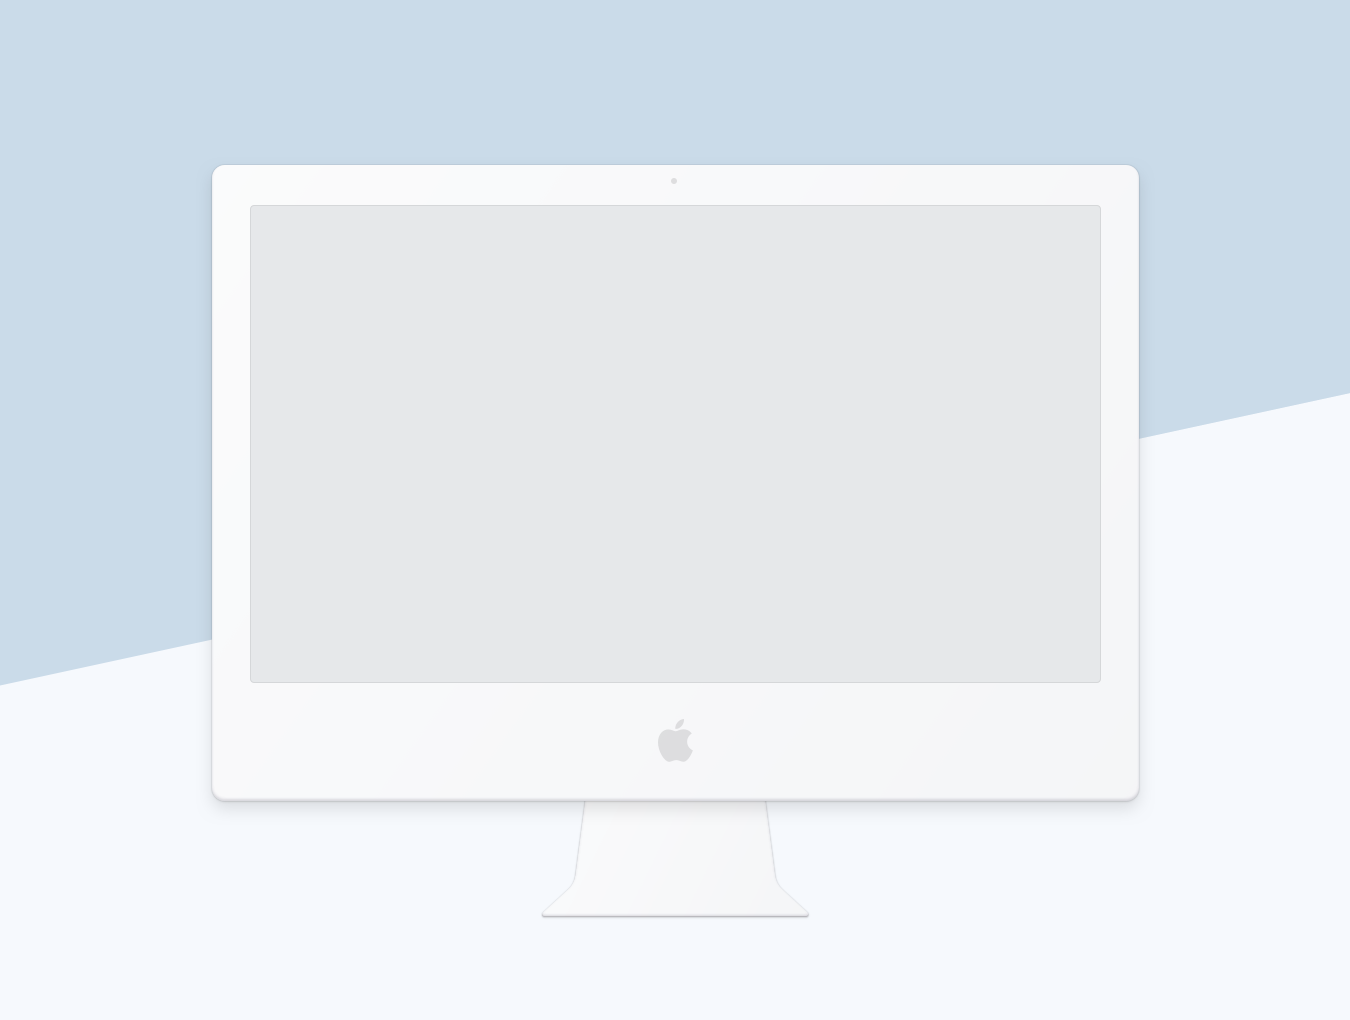 扁平化风格的MacBook和Mac等苹果电脑 Smoooth